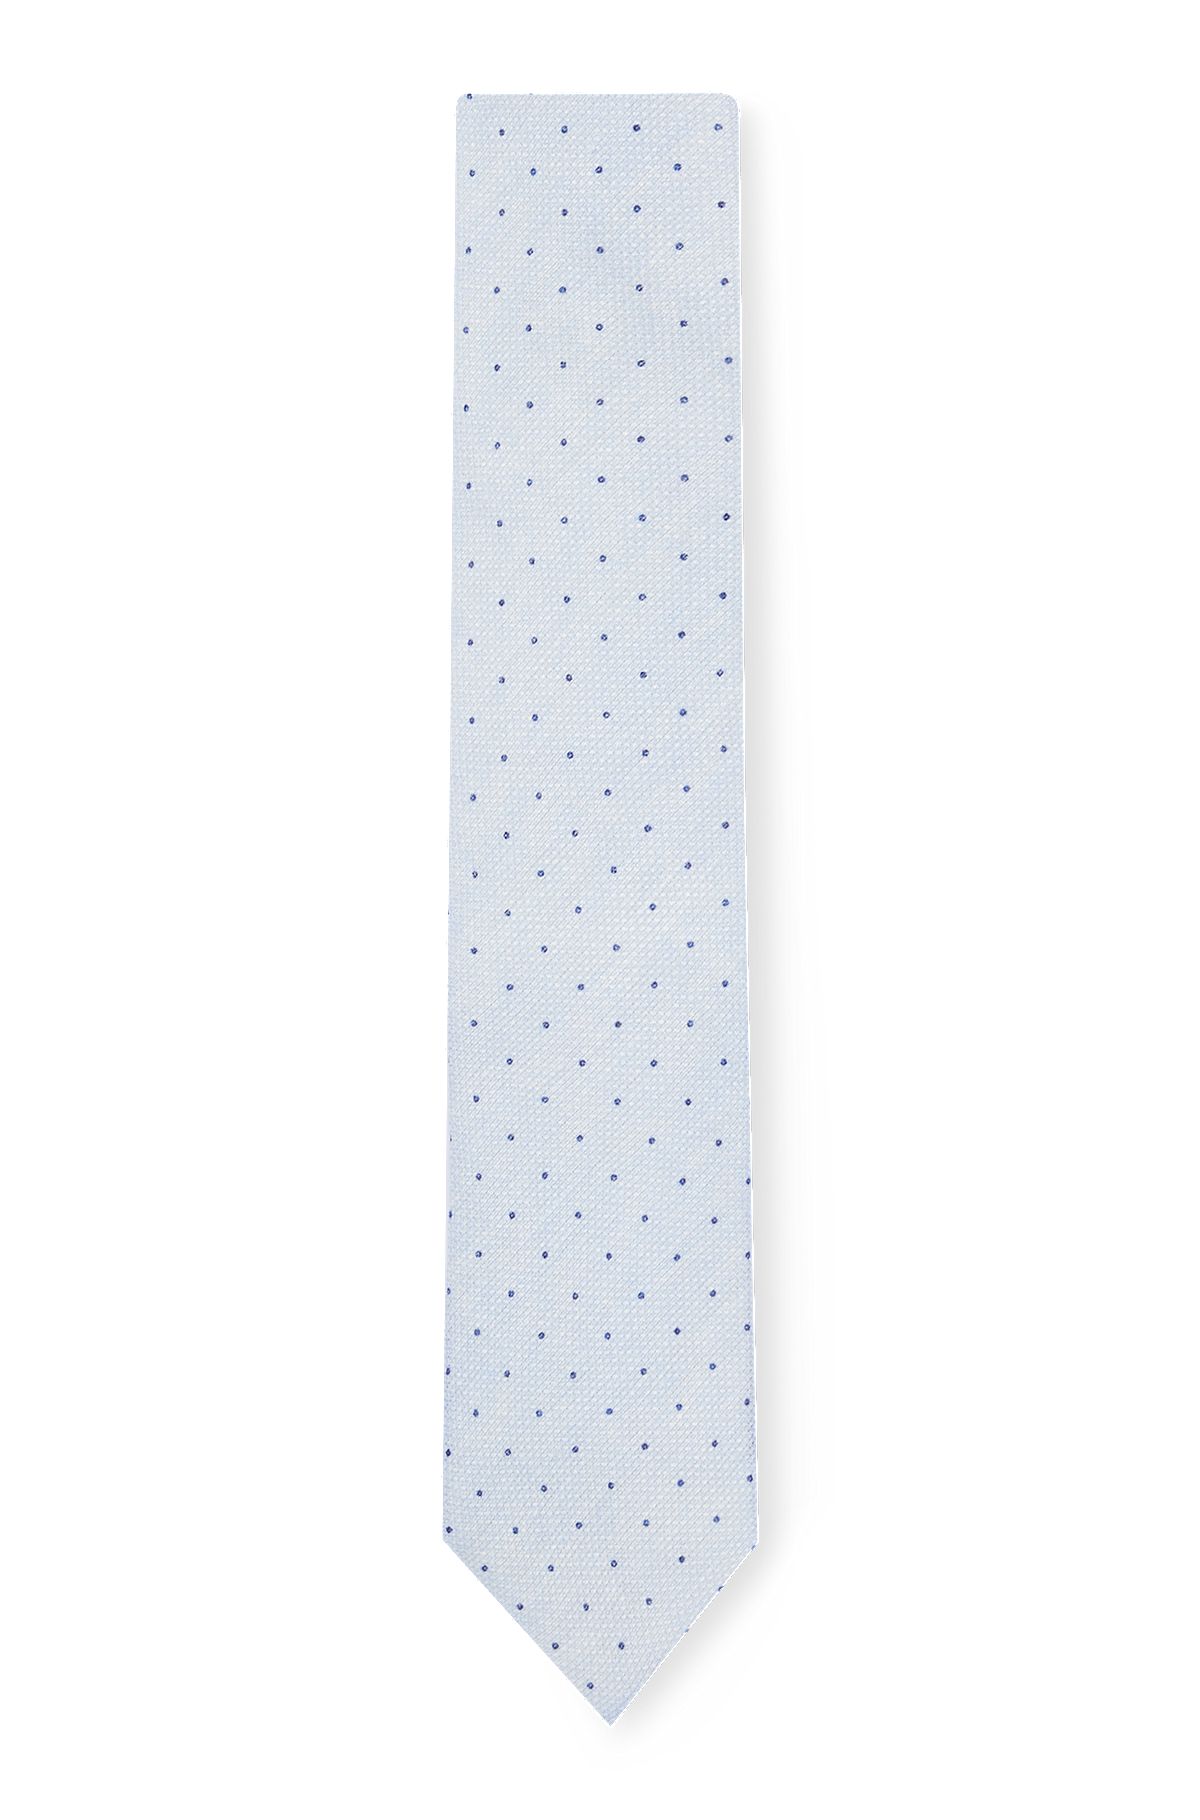 Cravate en lin et coton à pois imprimés, bleu clair